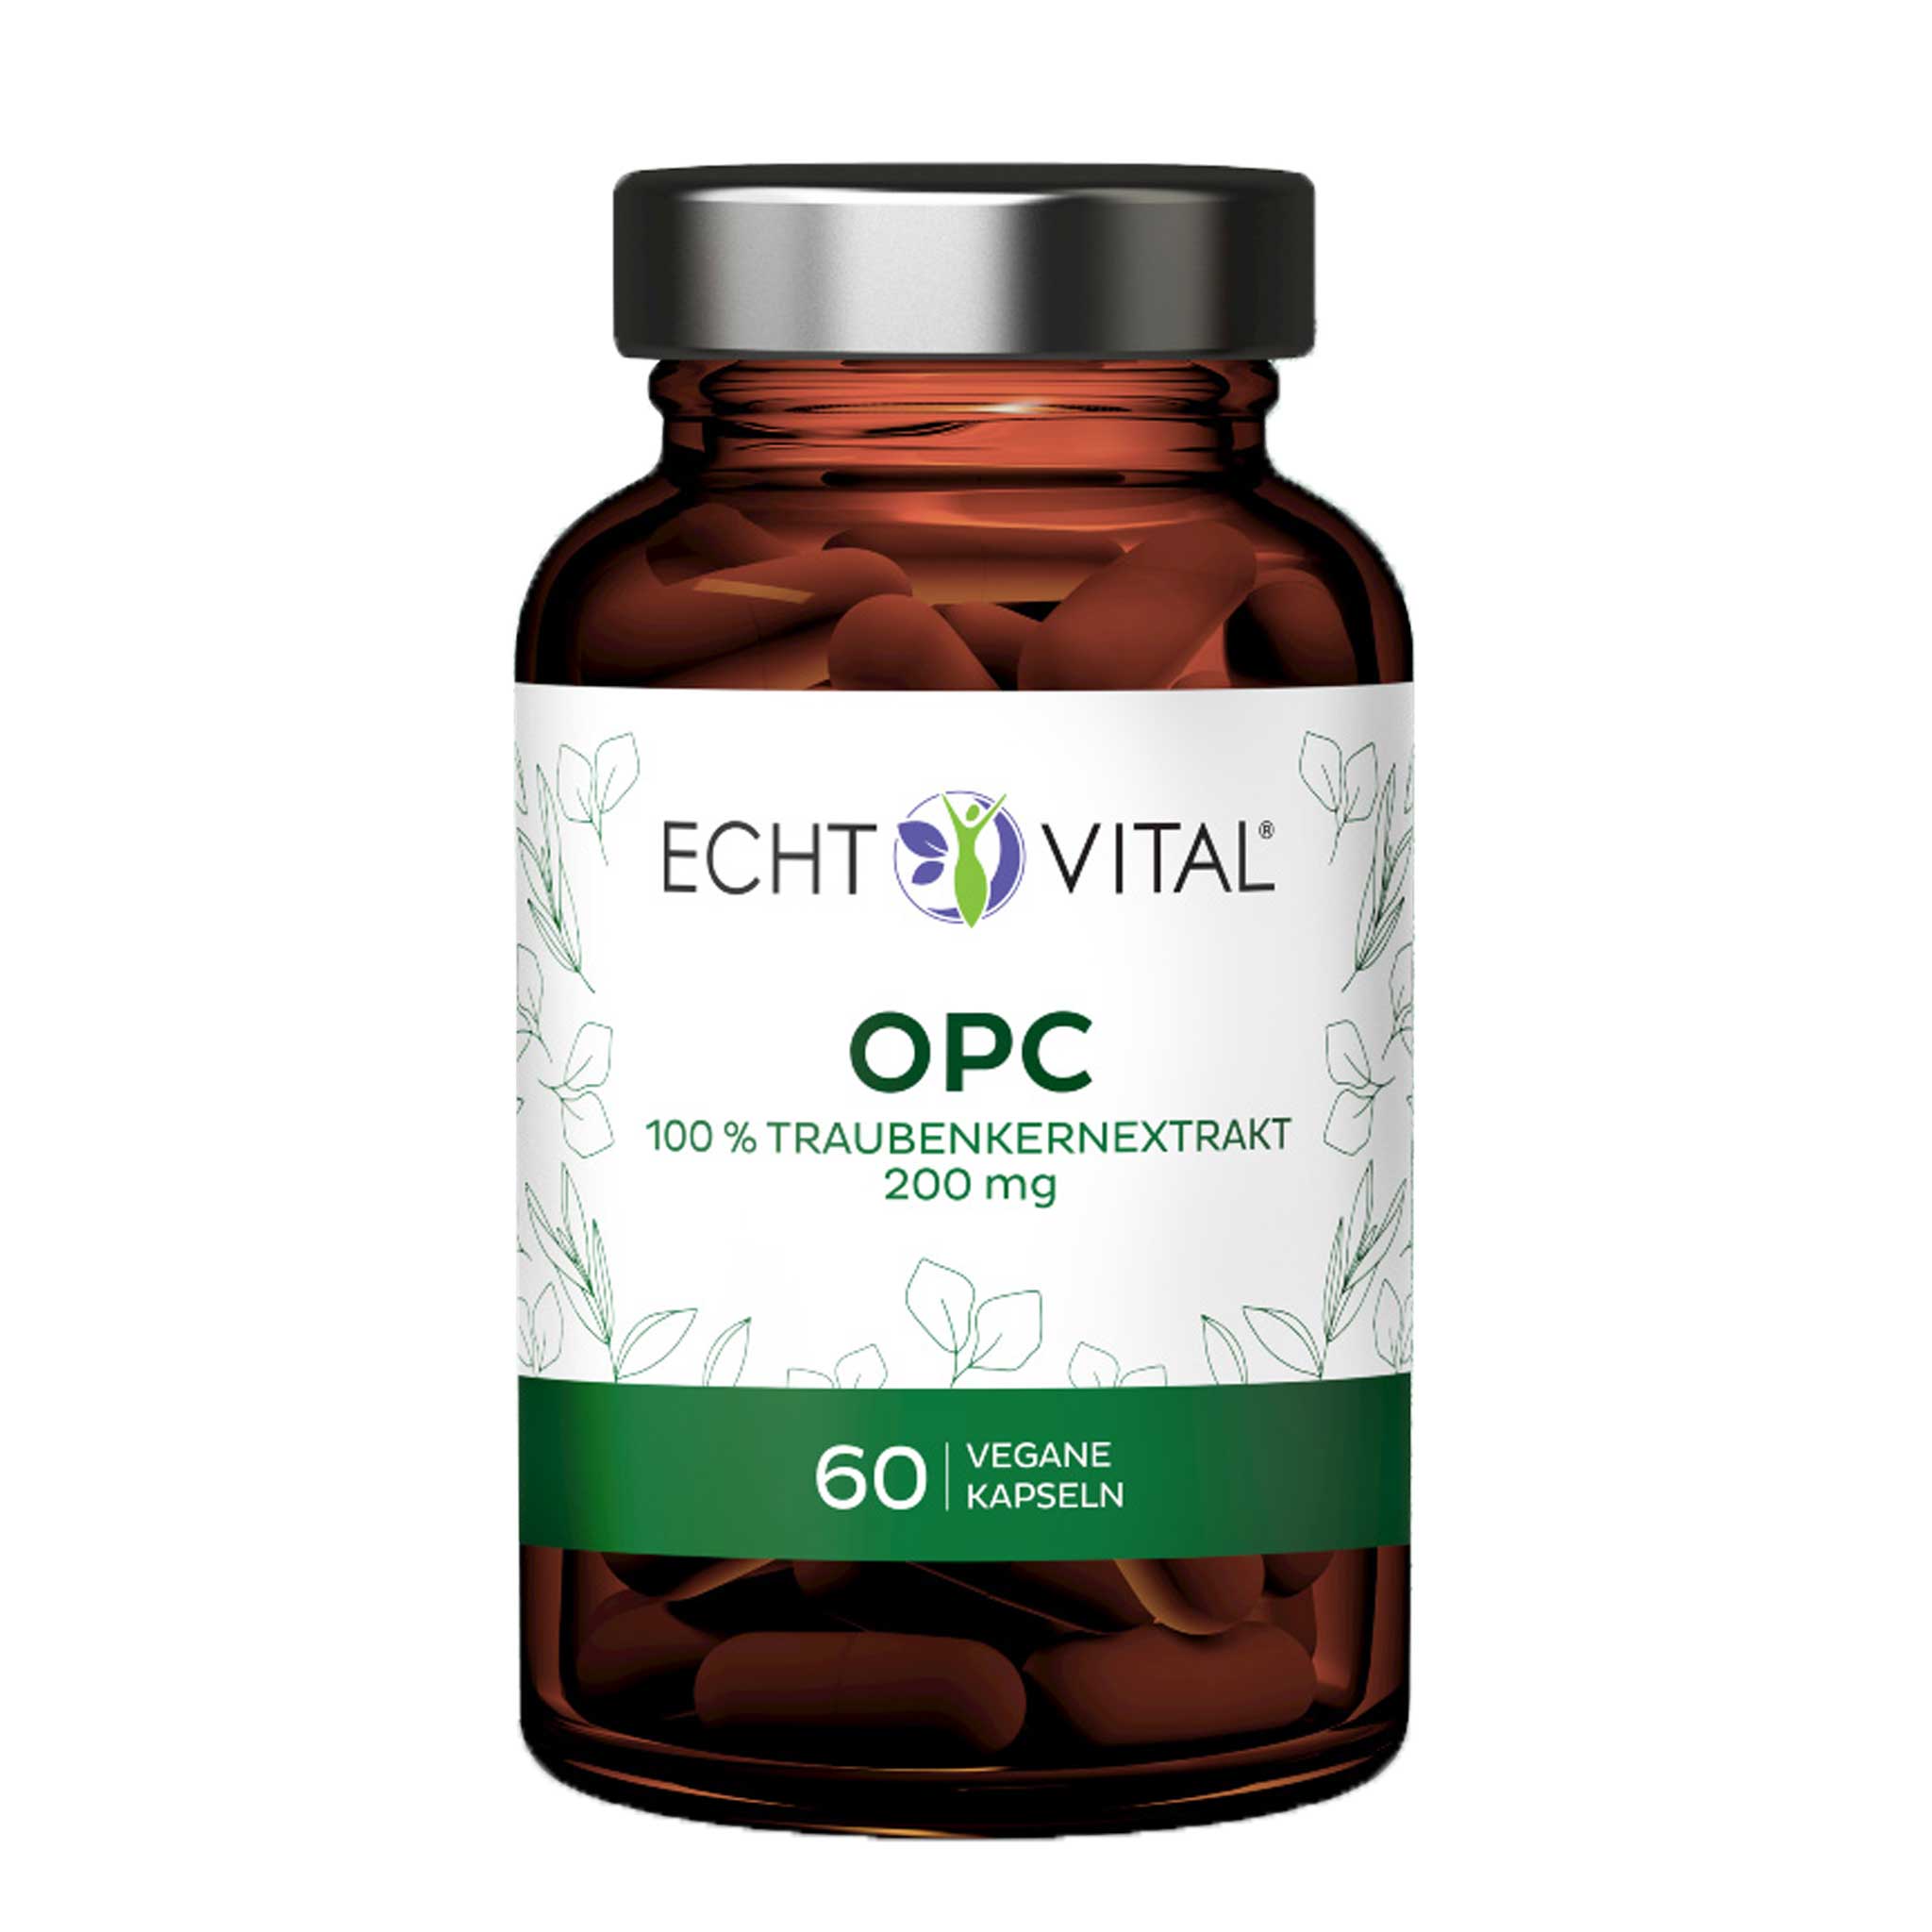 OPC Kapseln aus Traubenkern von Echt Vital beinhaltet 60 vegane Kapseln